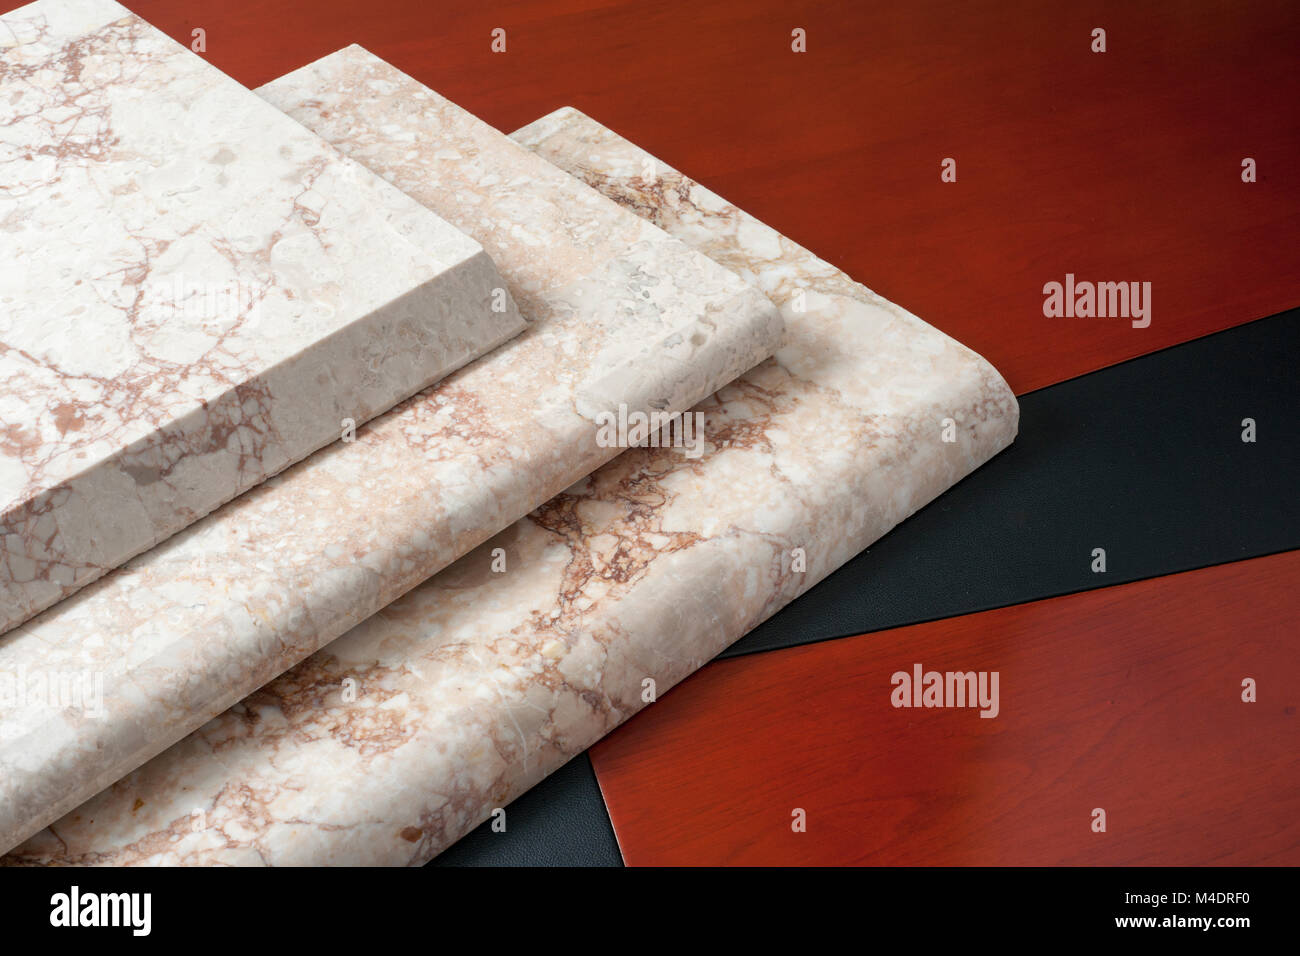 sélection de carreaux de marbre avec différents profils et finitions Banque D'Images